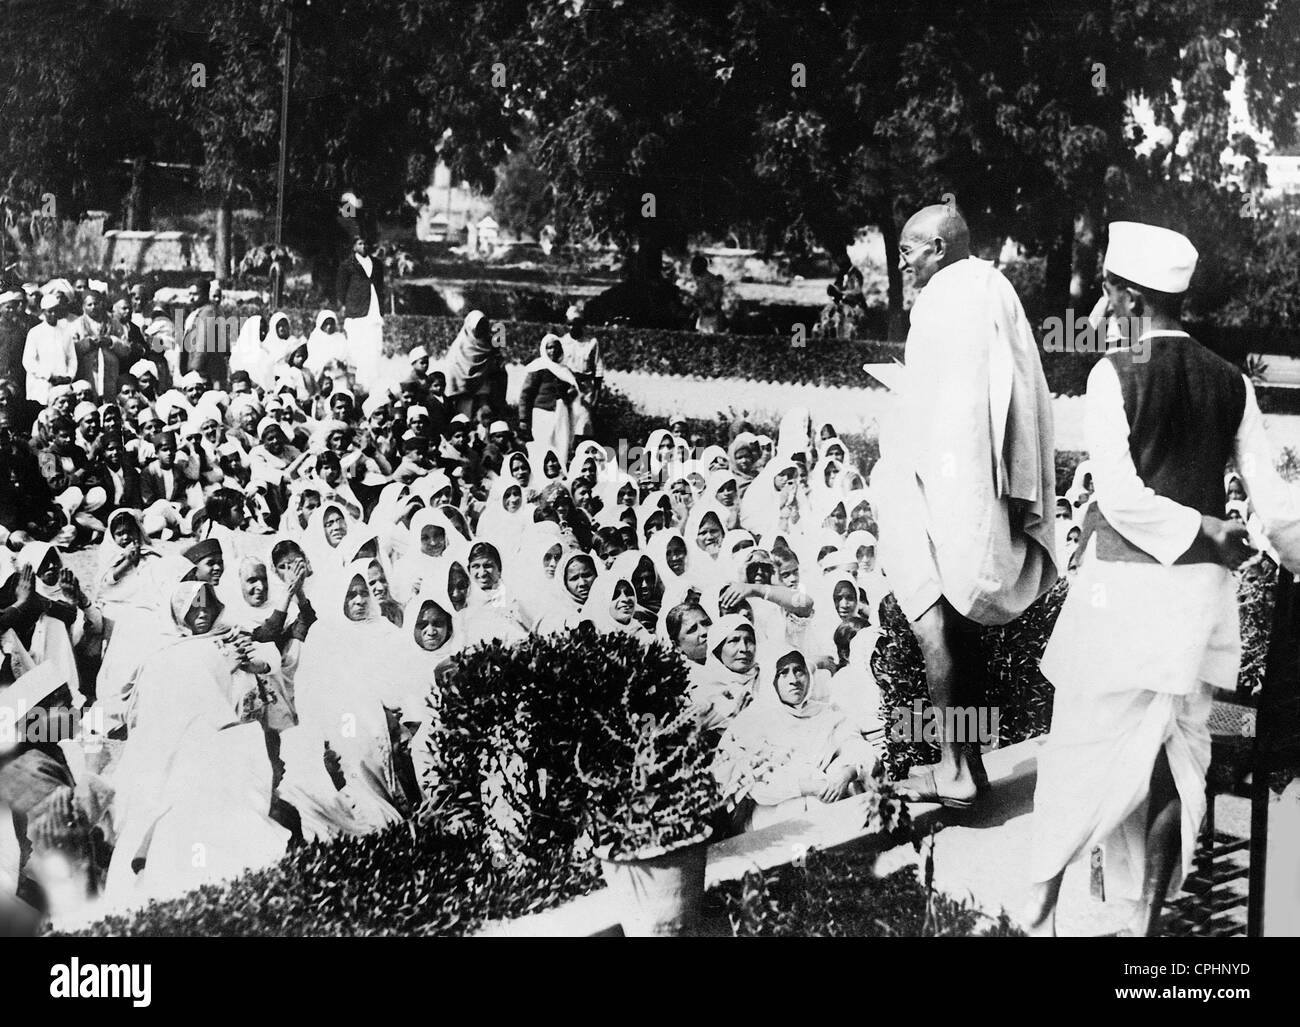 Mahatma Gandhi speaking to his followers, 1930 (b/w photo) Stock Photo